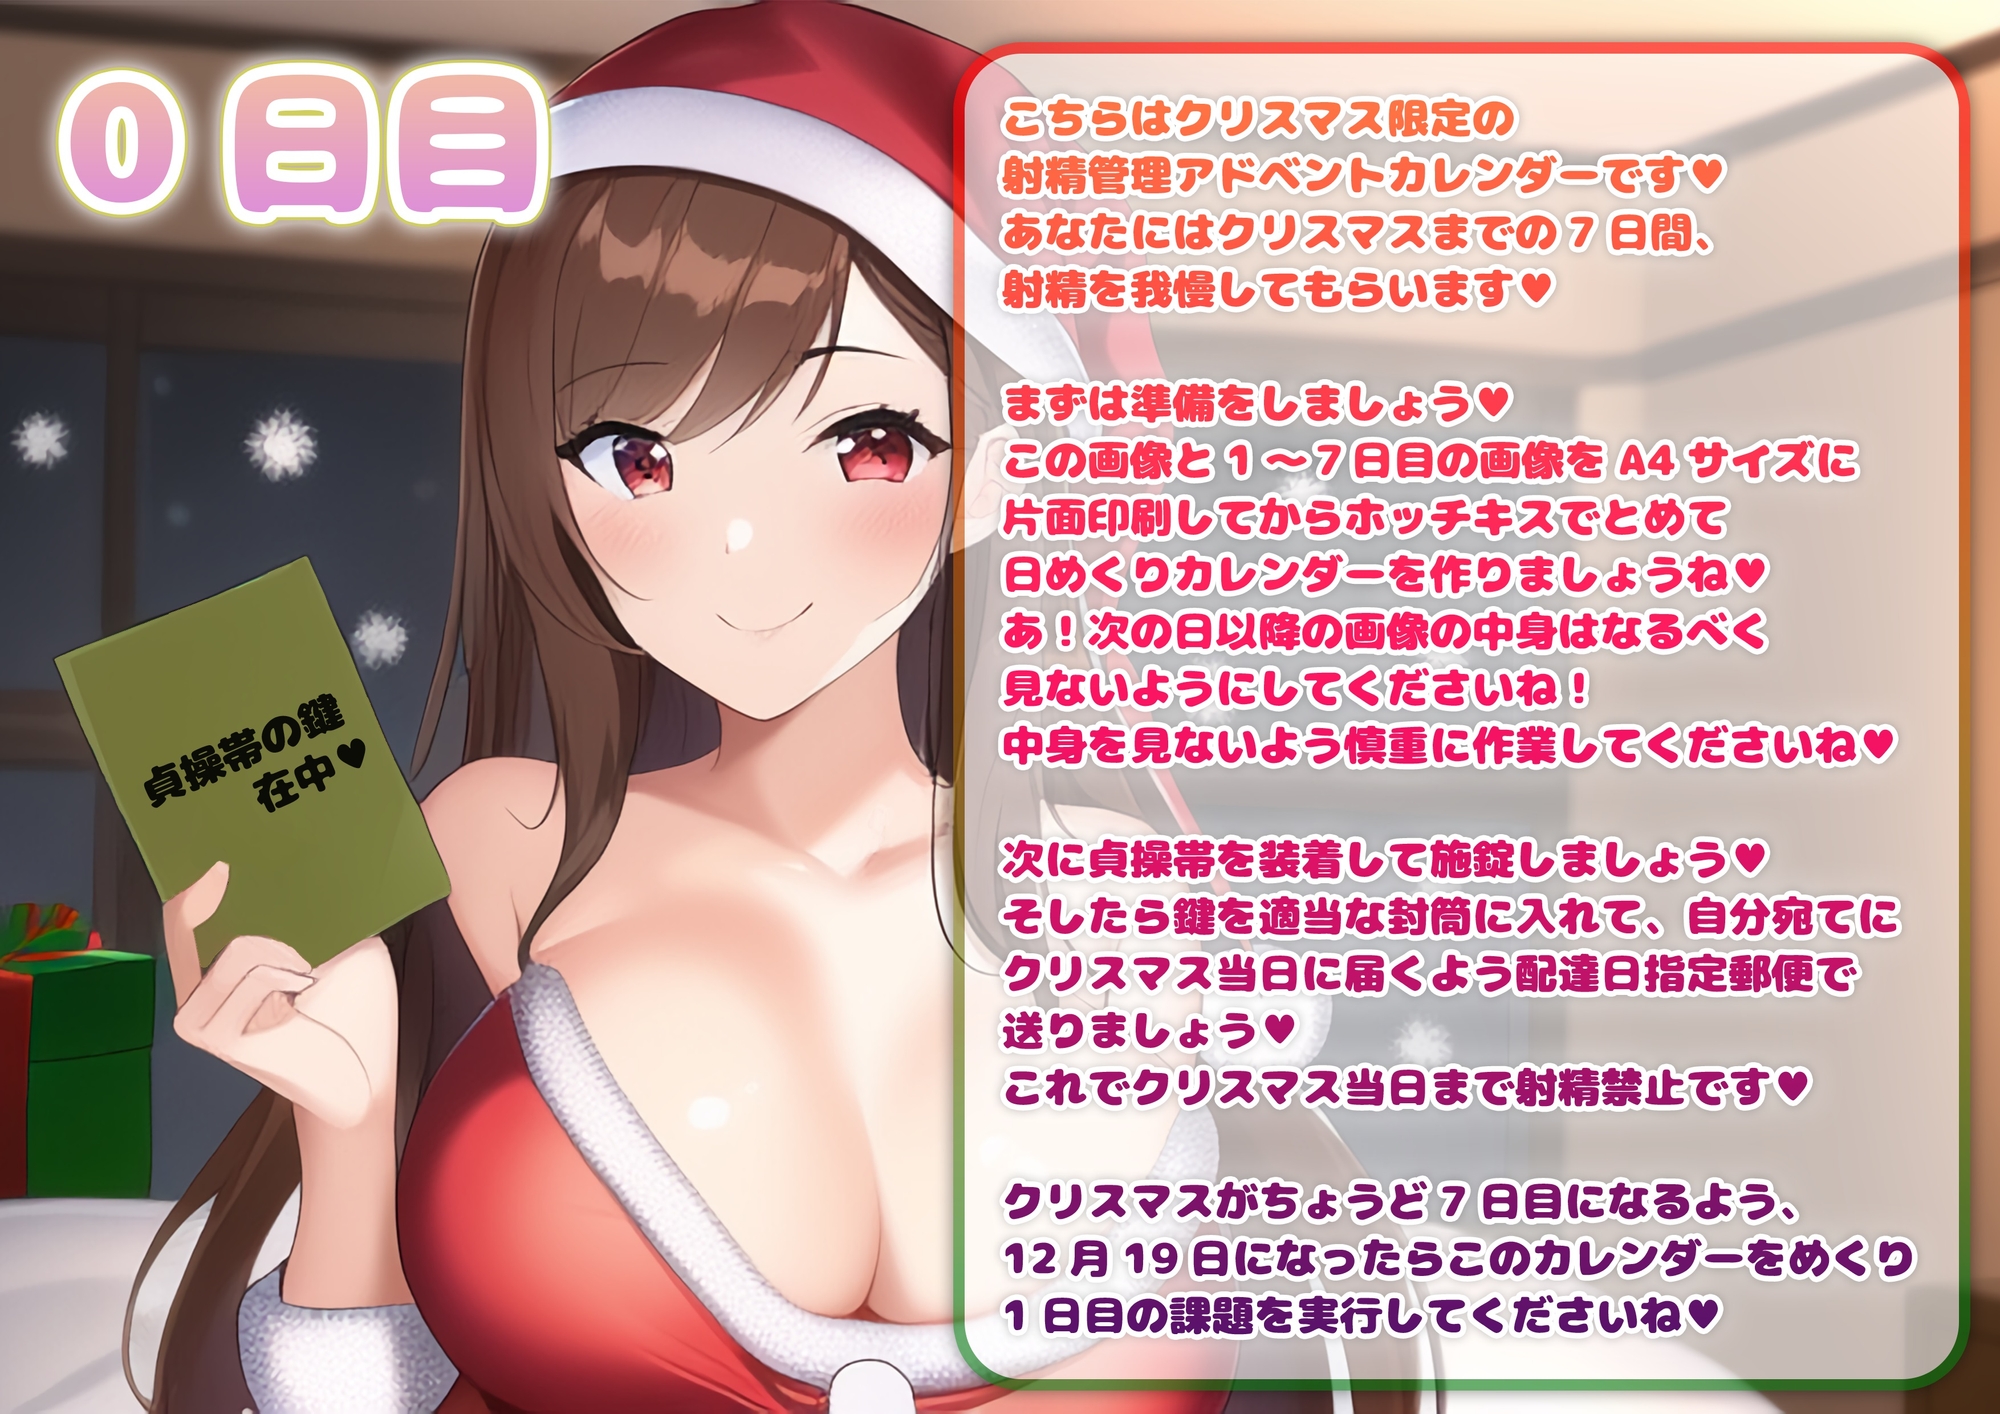 クリスマス限定!射精管理アドベントカレンダー【コミック・CG】